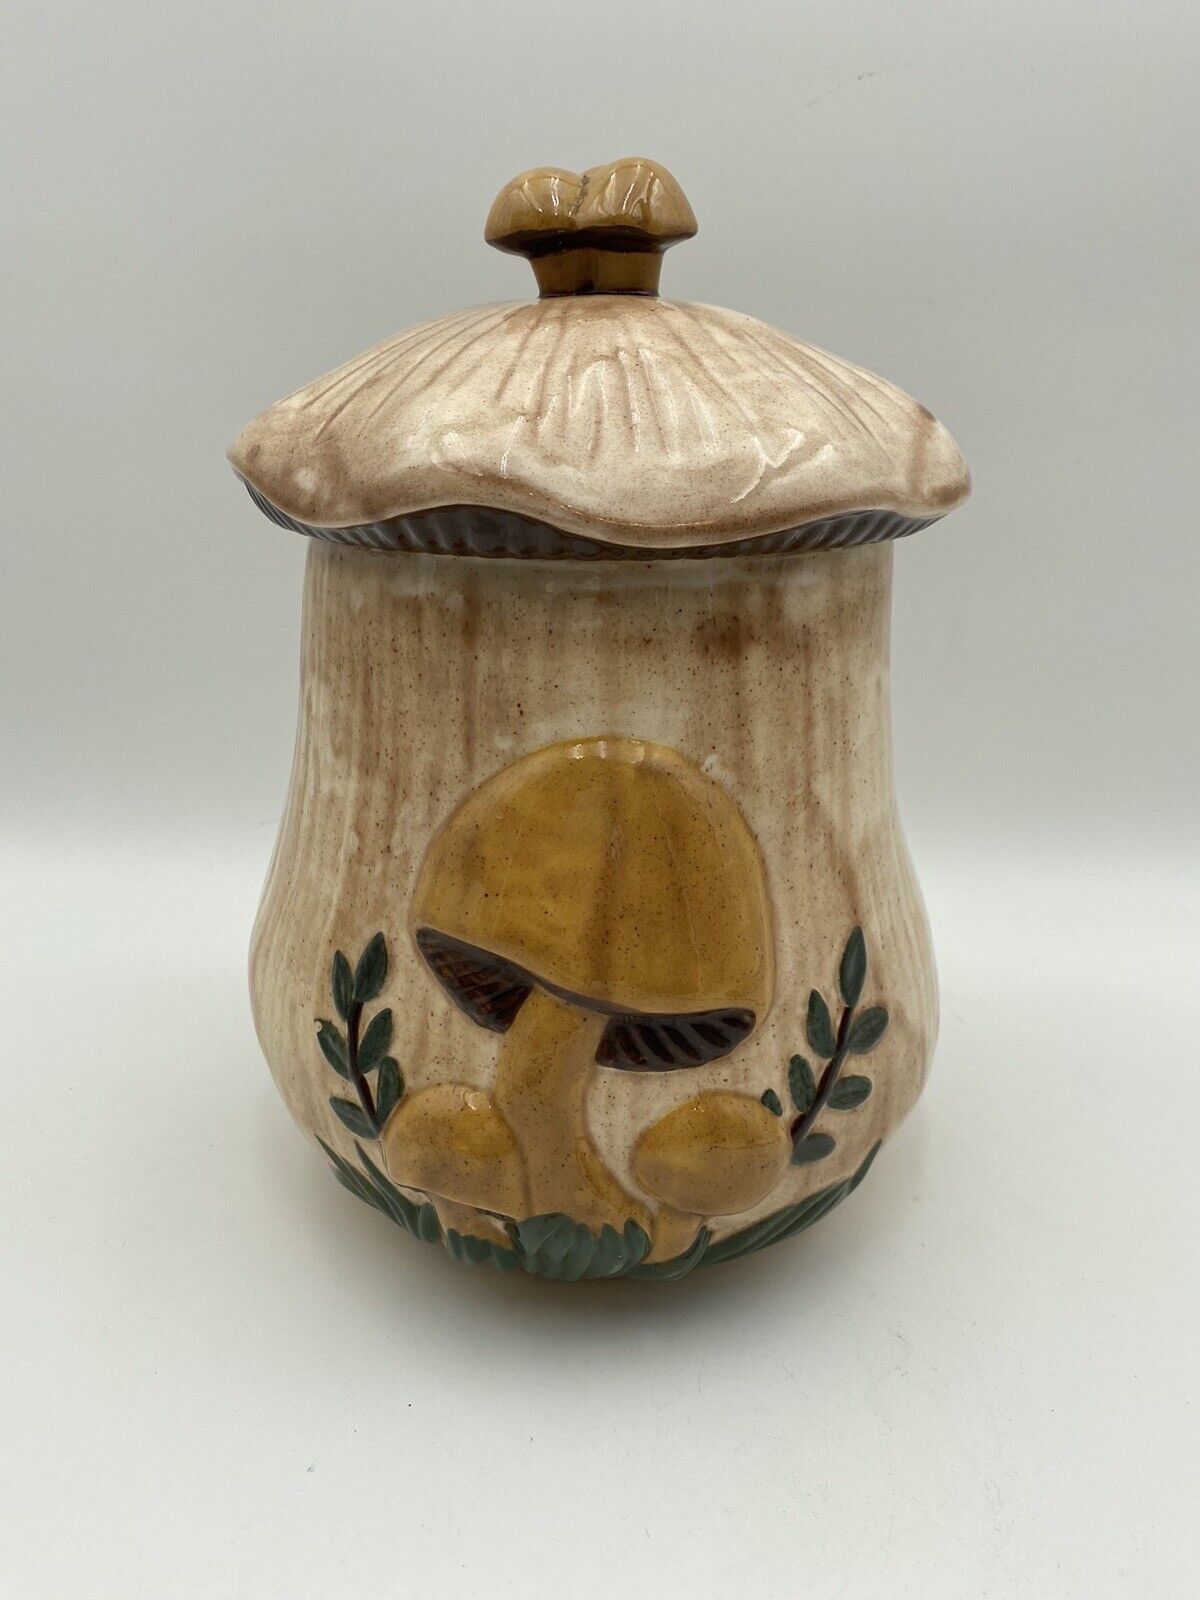 Arnel’s Large Vintage Ceramic Mushroom Canister 10” Cookie Jar